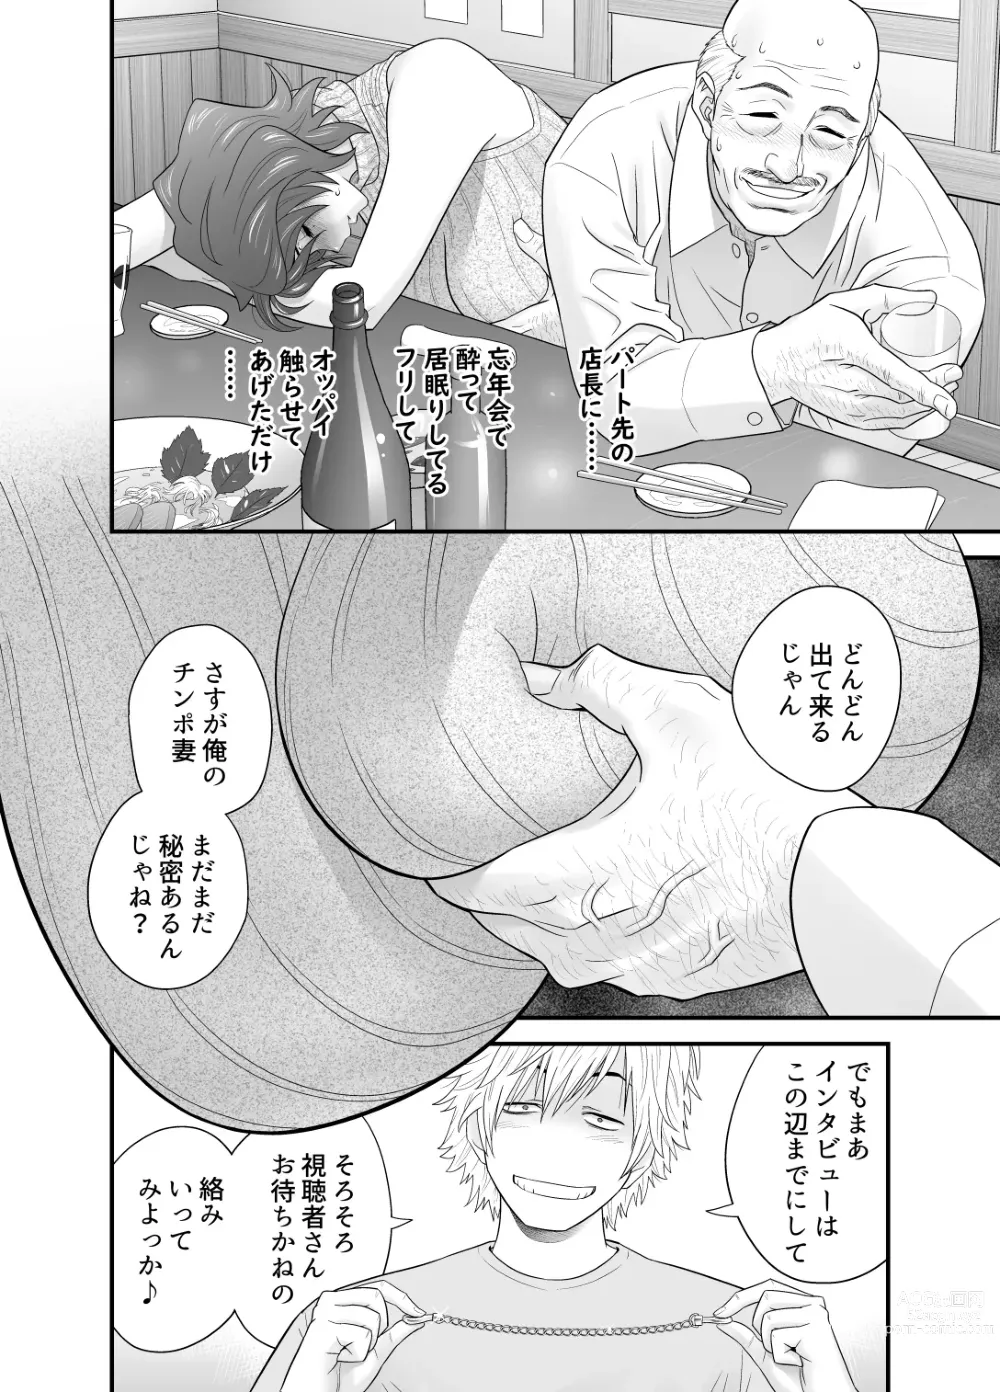 Page 23 of doujinshi Haha ga Tomo Kano ni Natta node 3